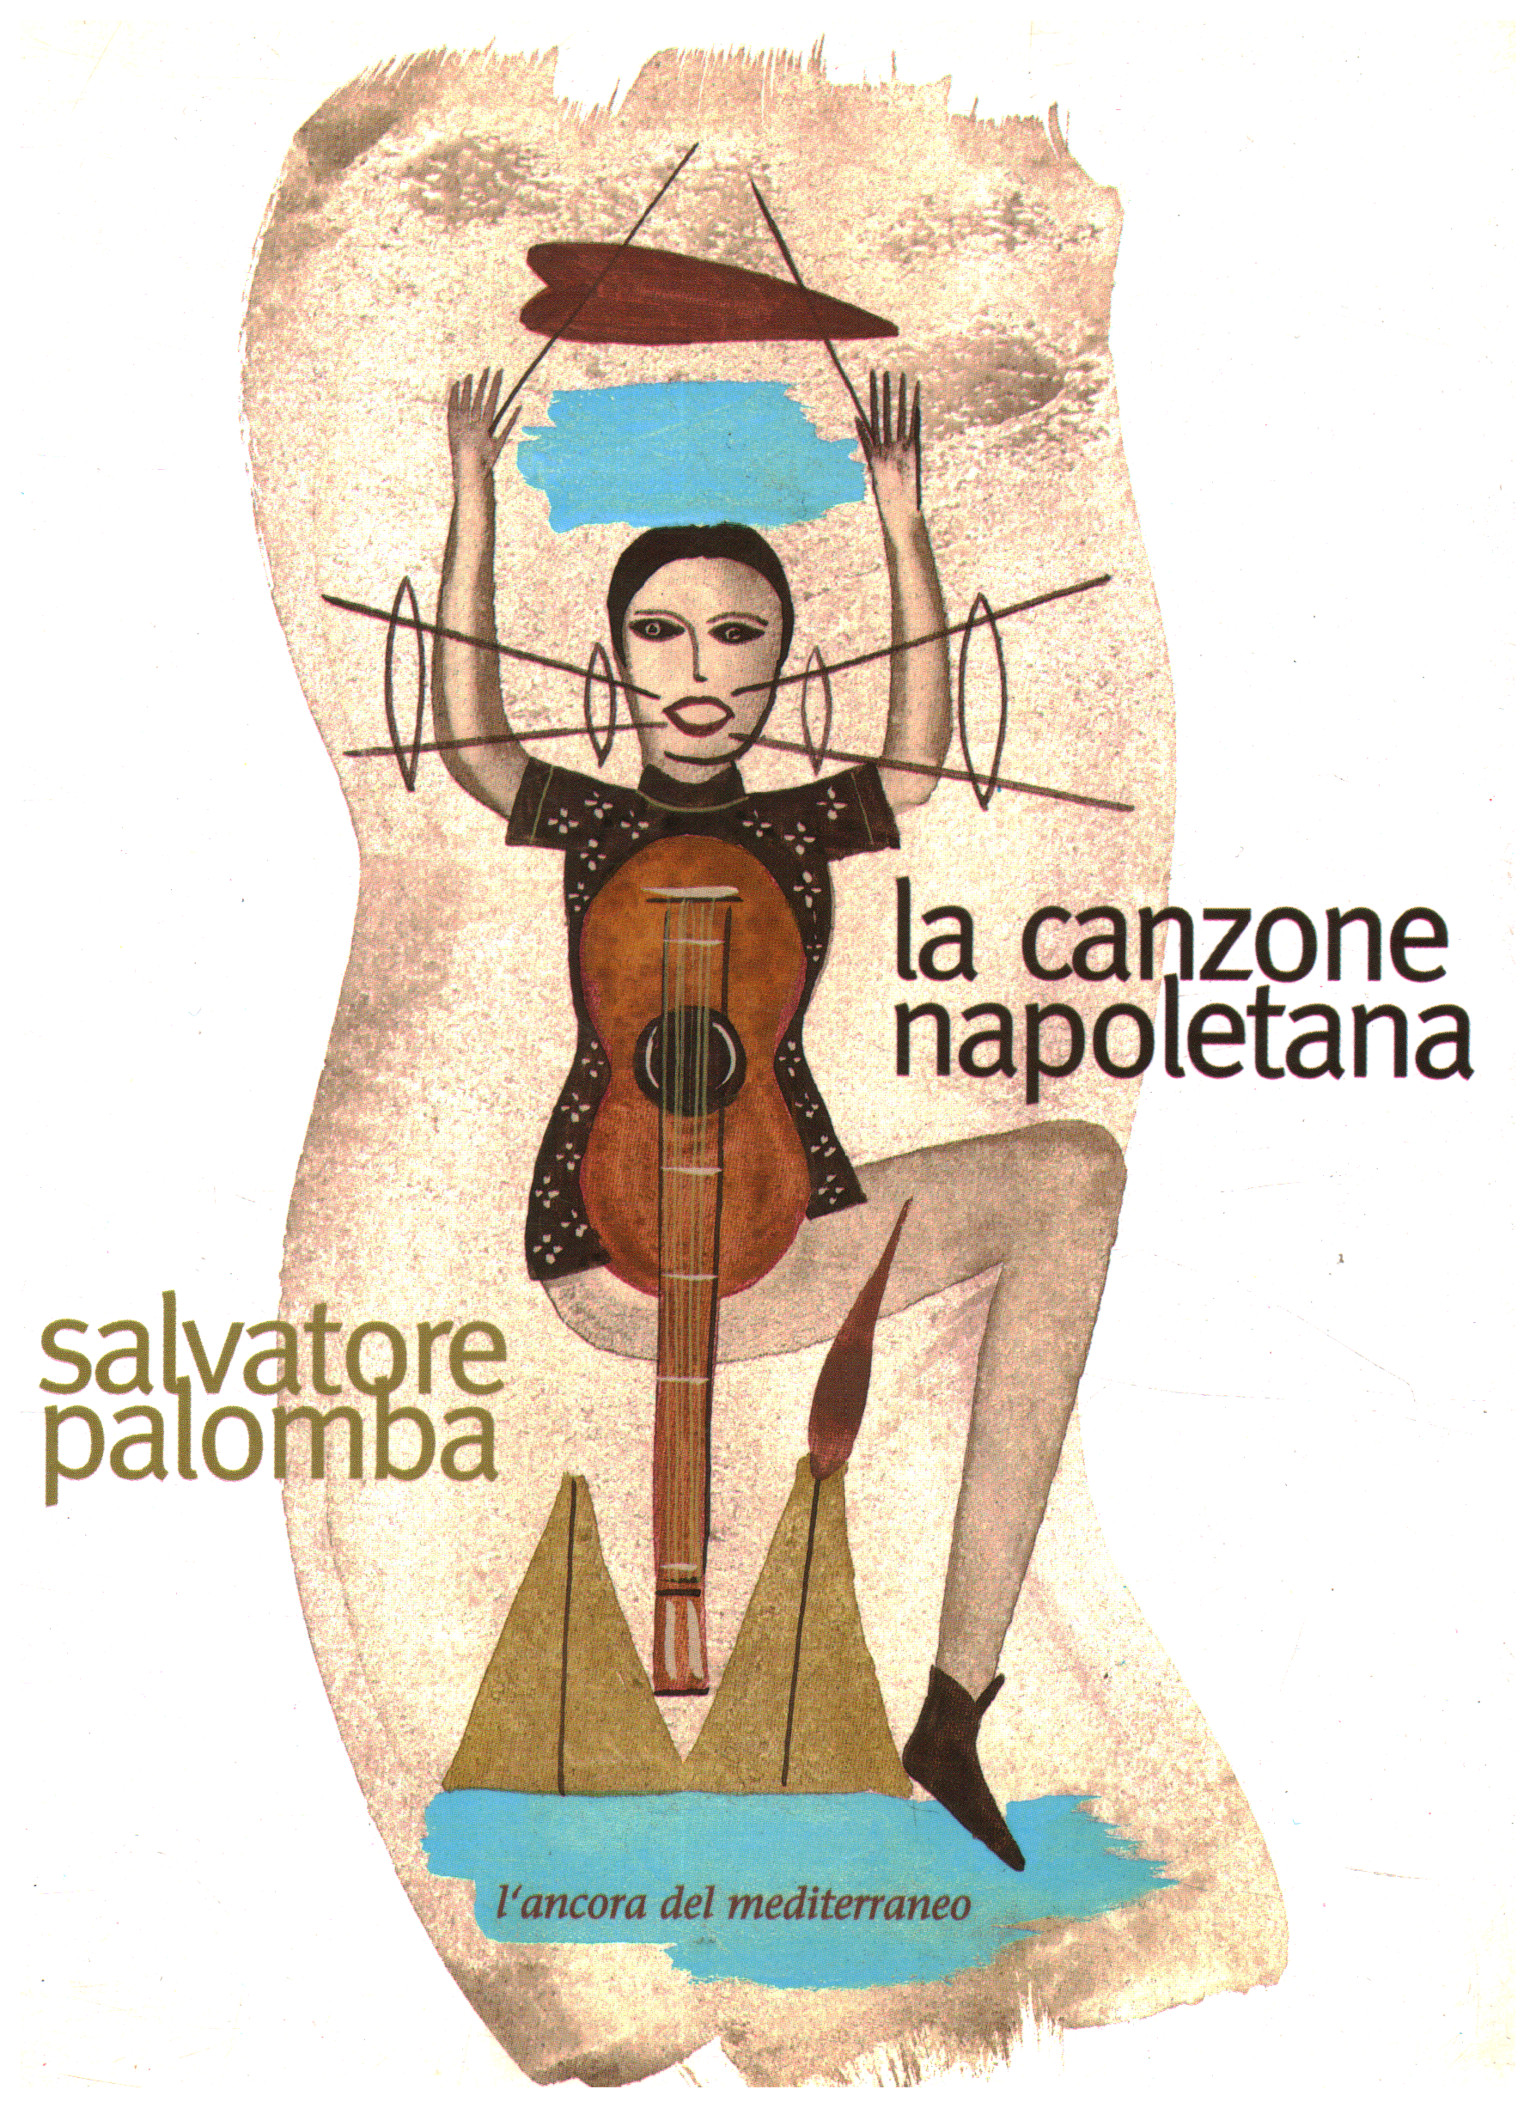 La canción napolitana